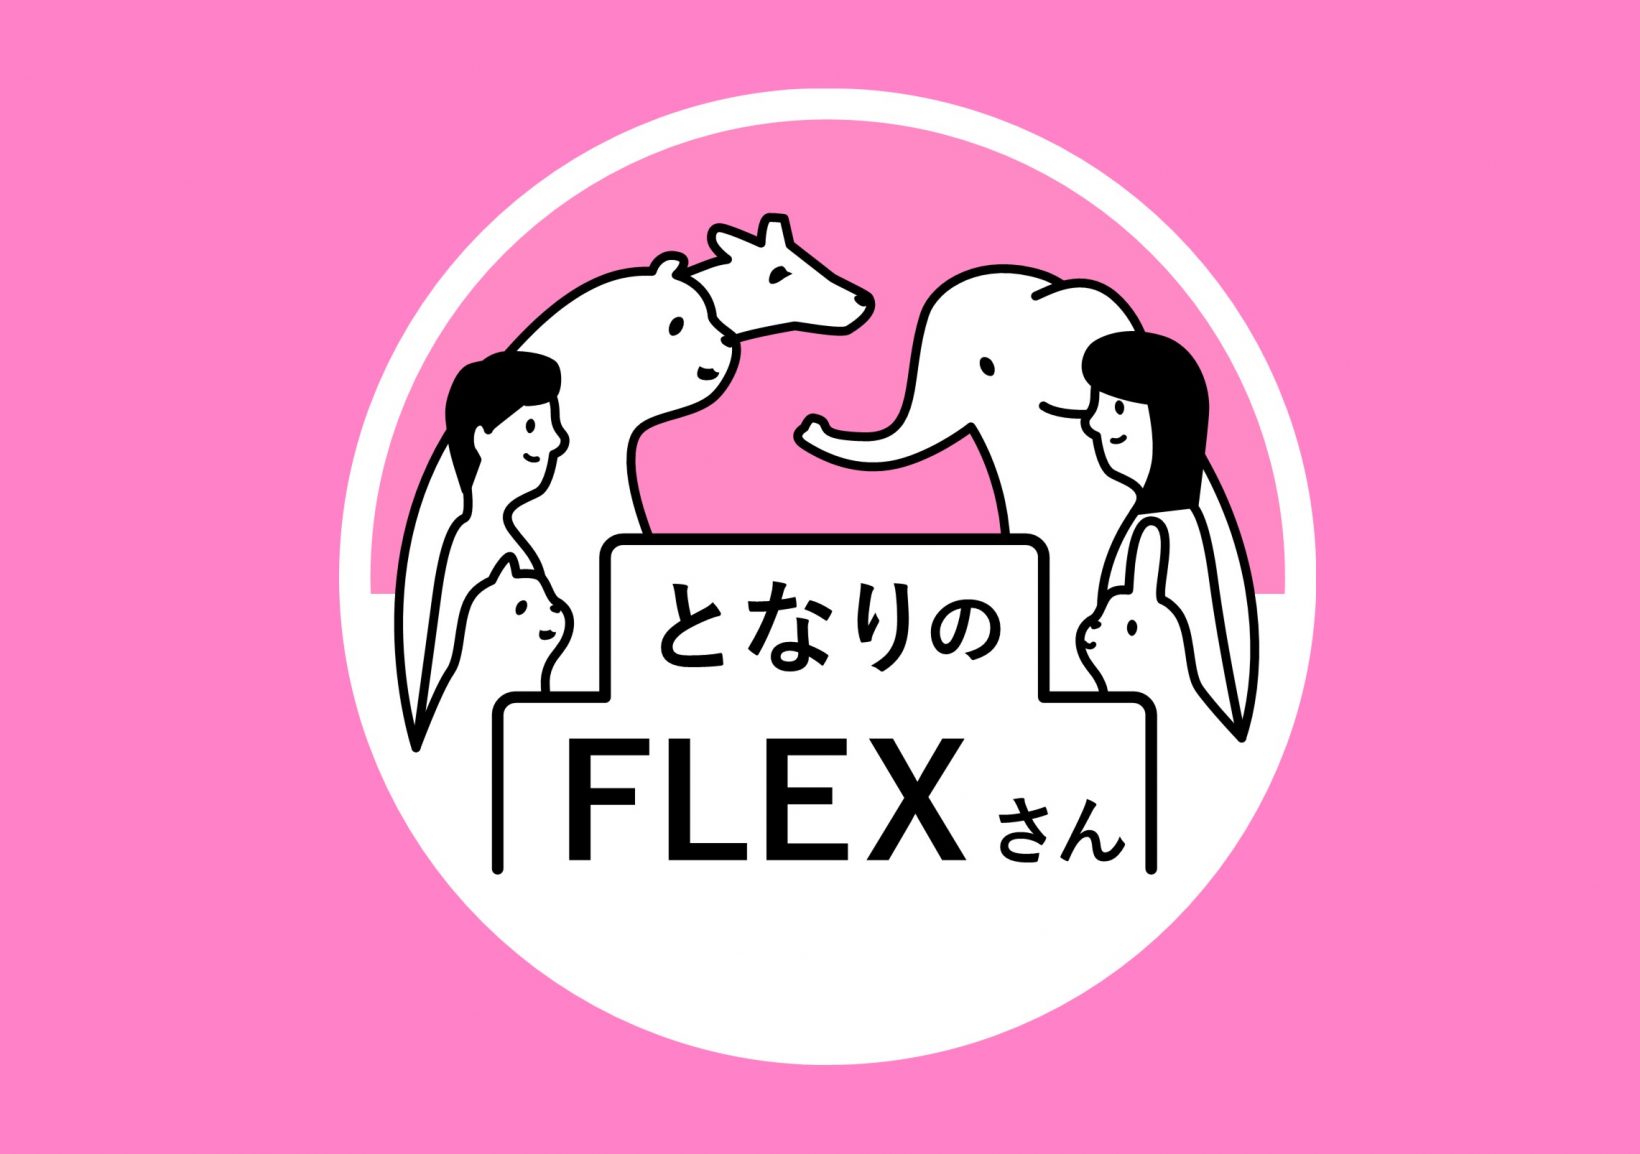 となりのFLEXさん 〜集まれ FLEX member〜@東京ミッドタウン八重洲